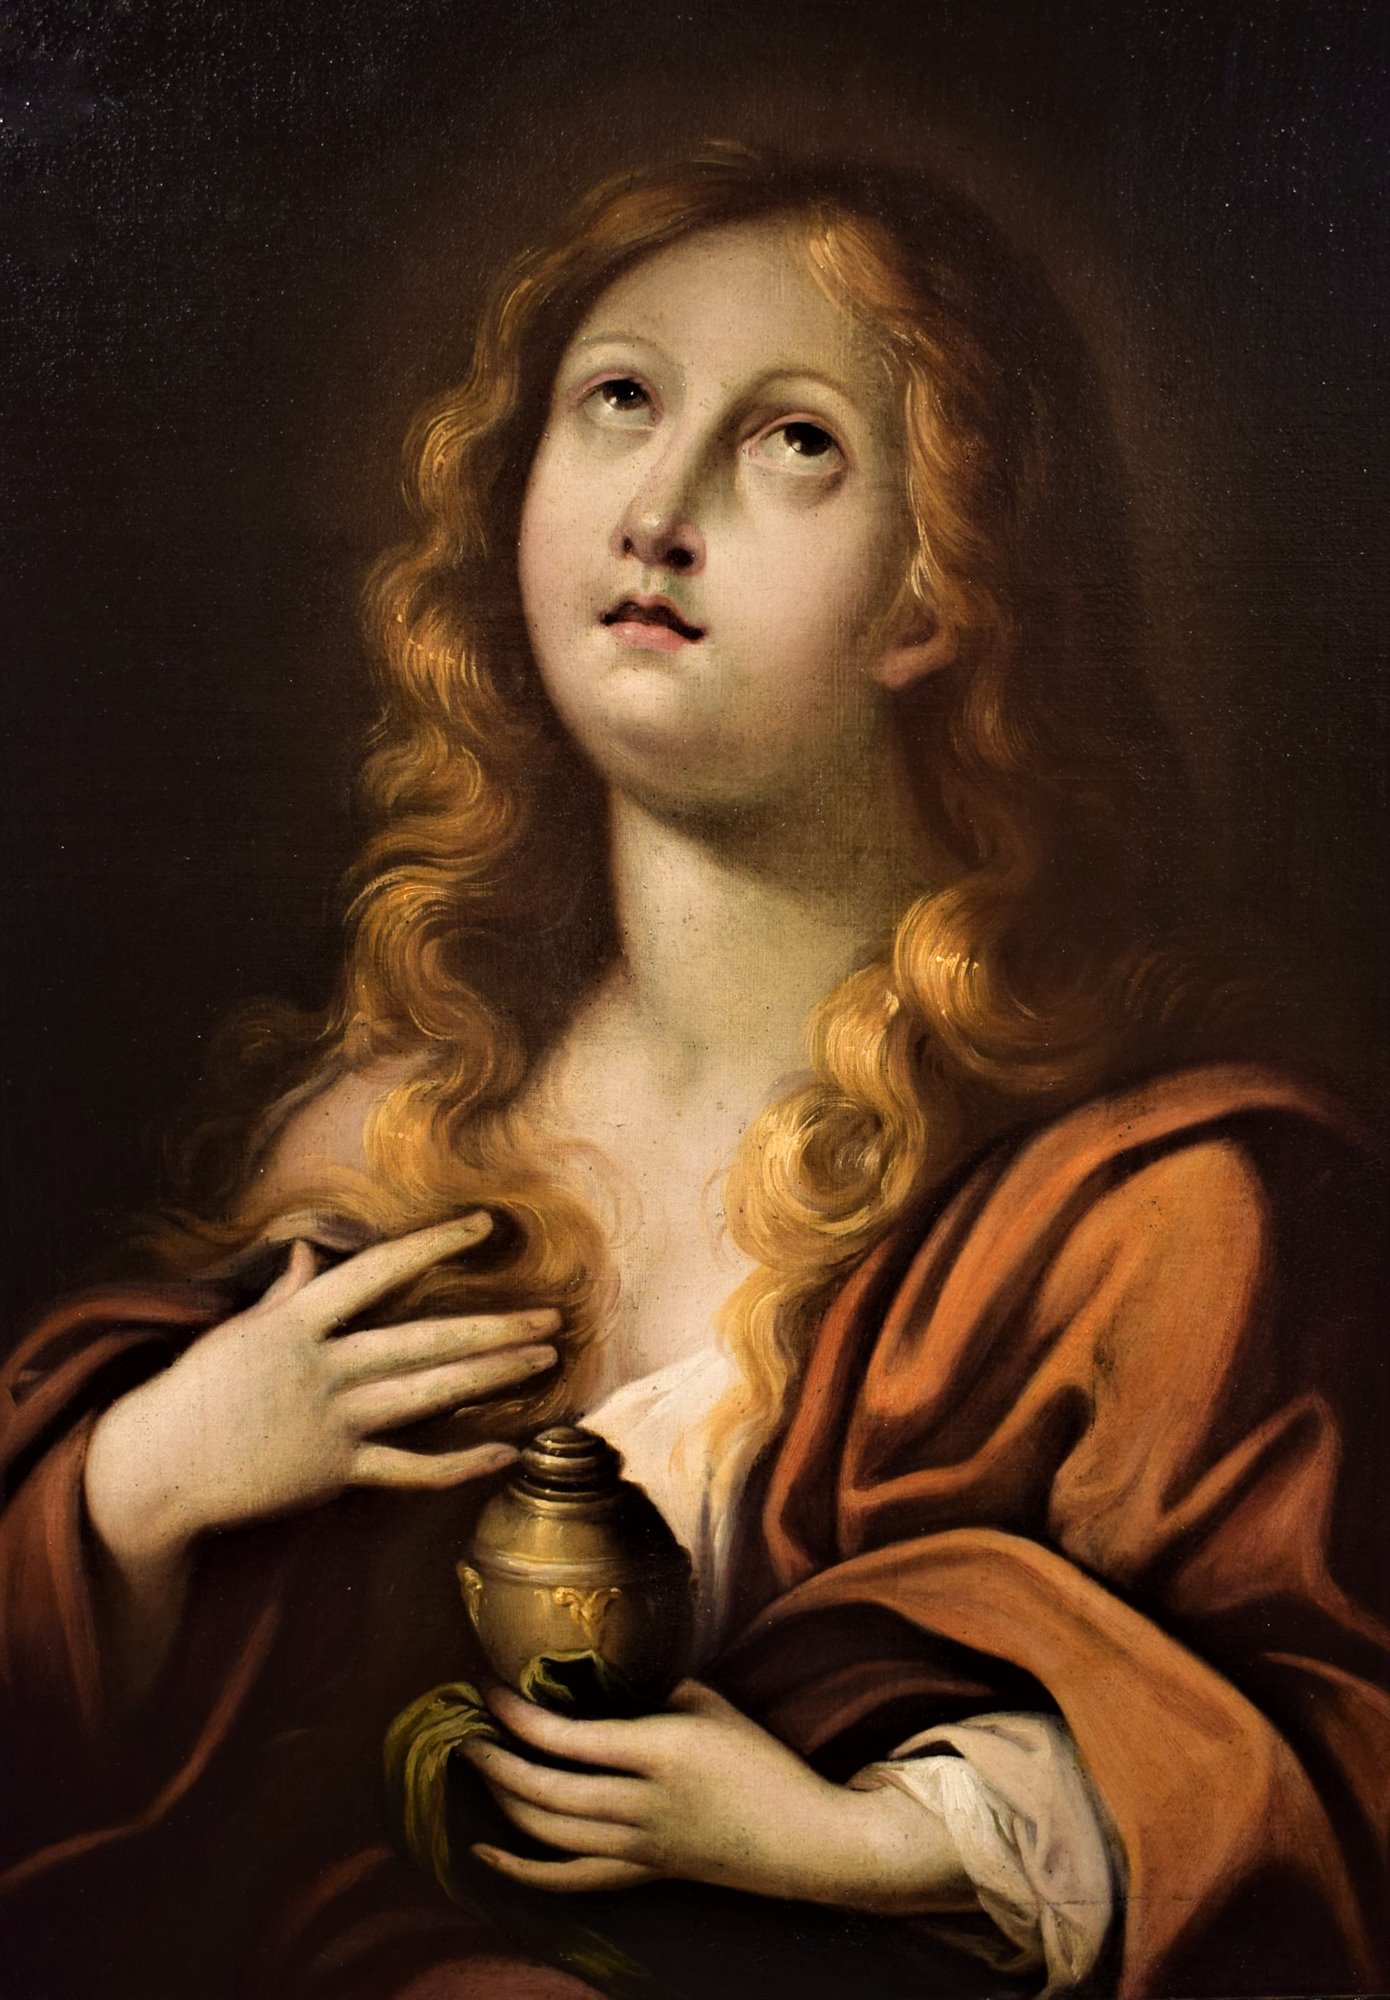 La conversione di Maria Maddalena